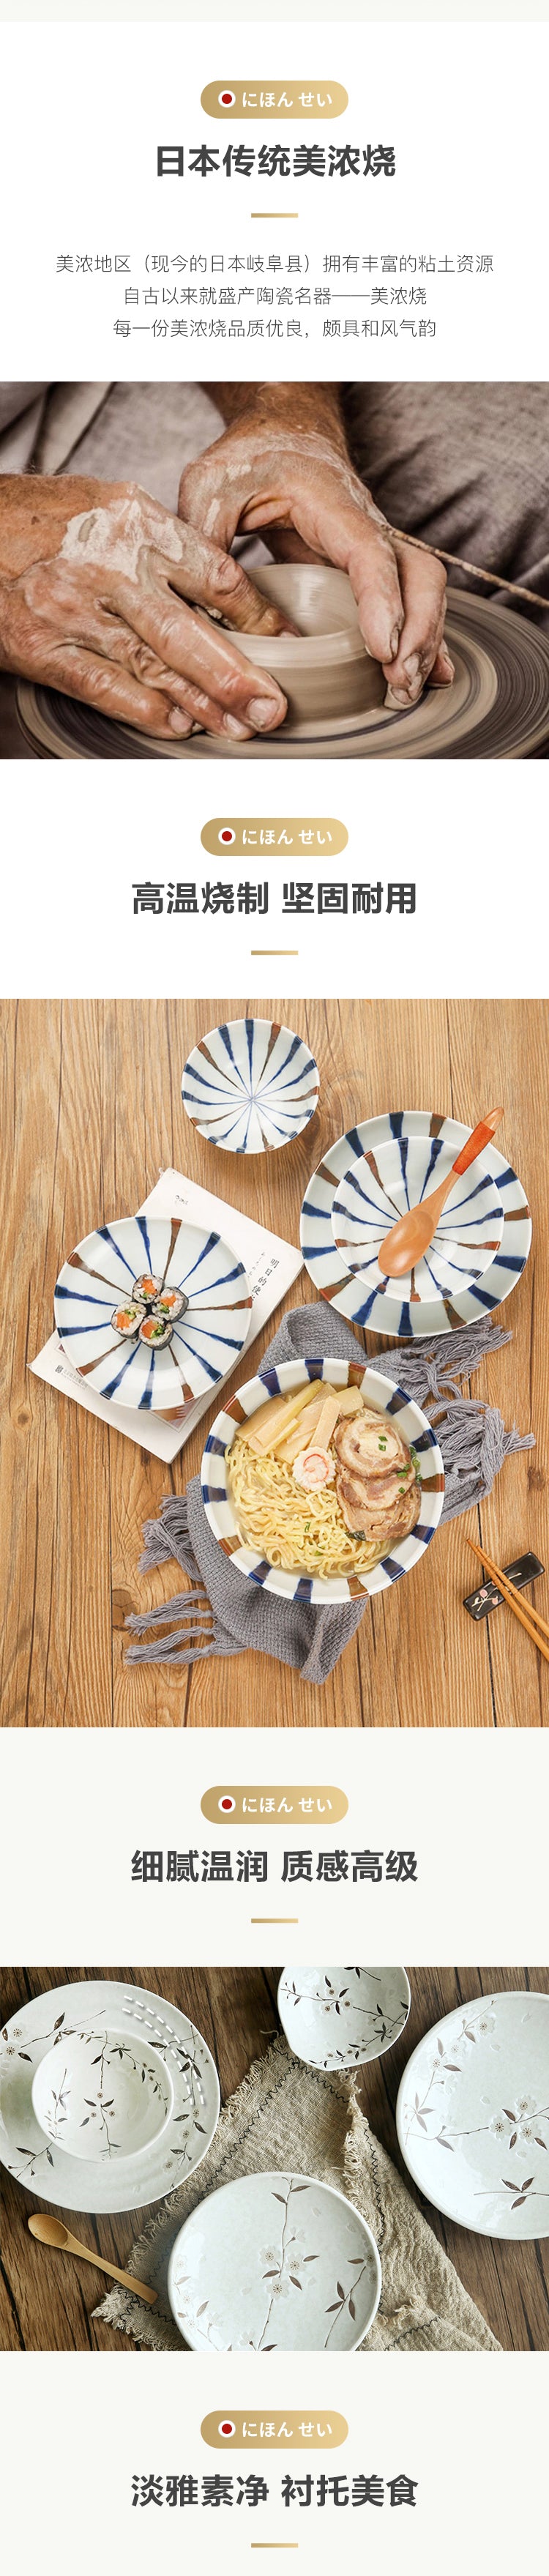 【美仓发货5-7日达】网易严选 日本制造 白雪樱餐具6件套 日式餐具 2人食